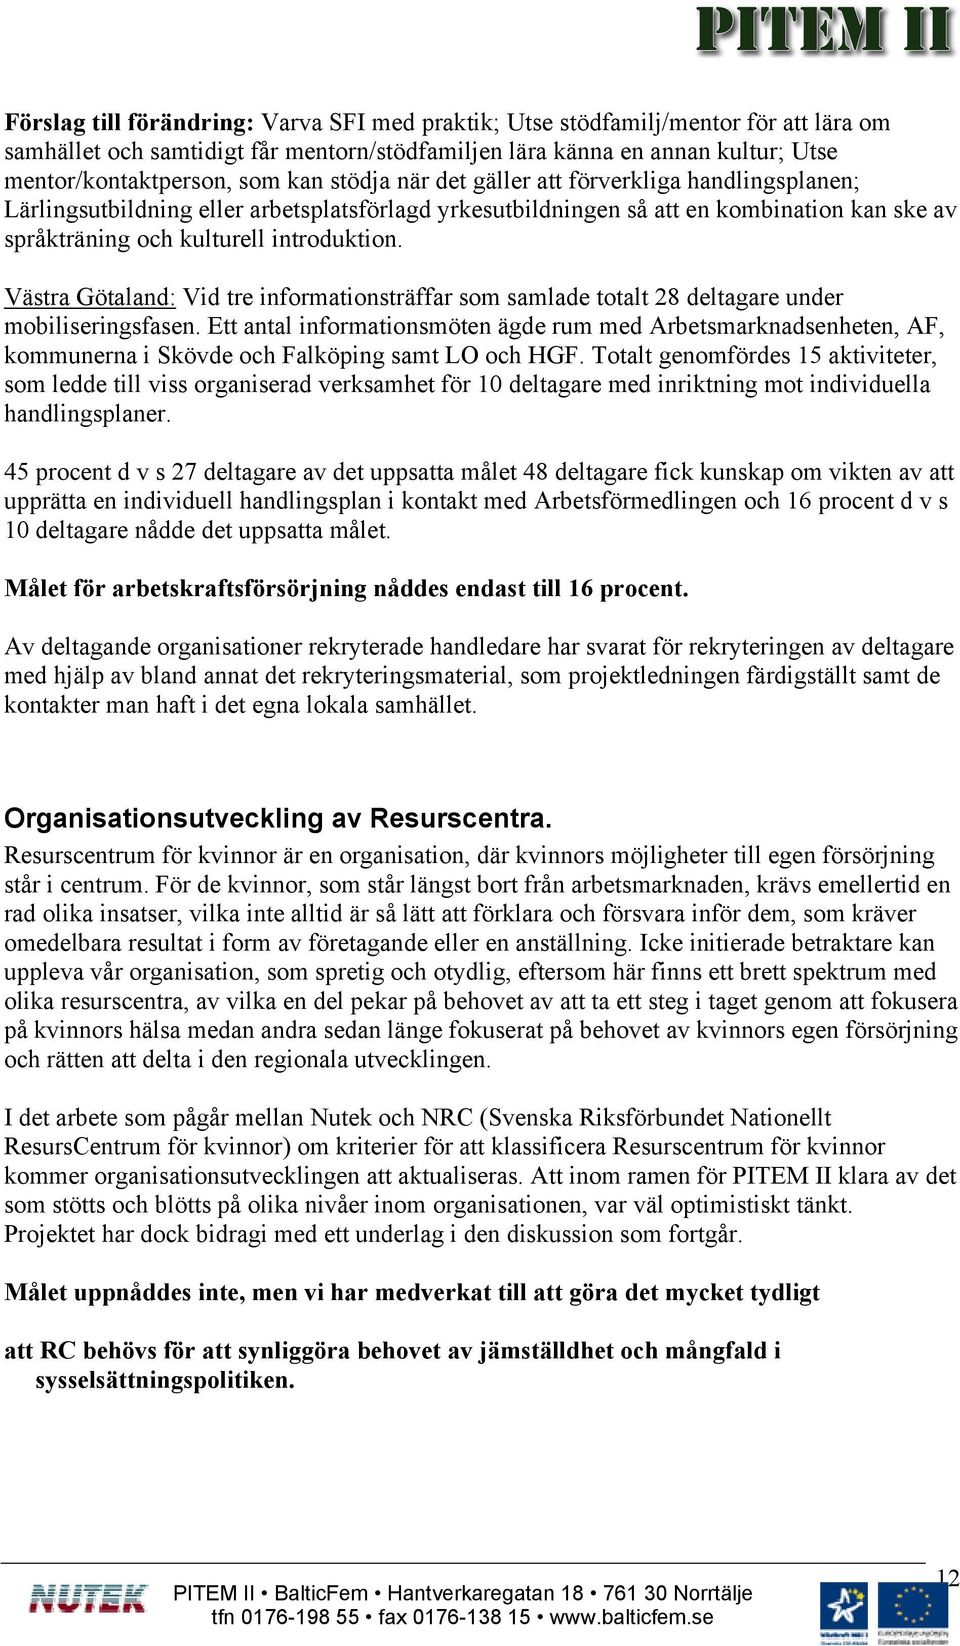 Västra Götaland: Vid tre informationsträffar som samlade totalt 28 deltagare under mobiliseringsfasen.